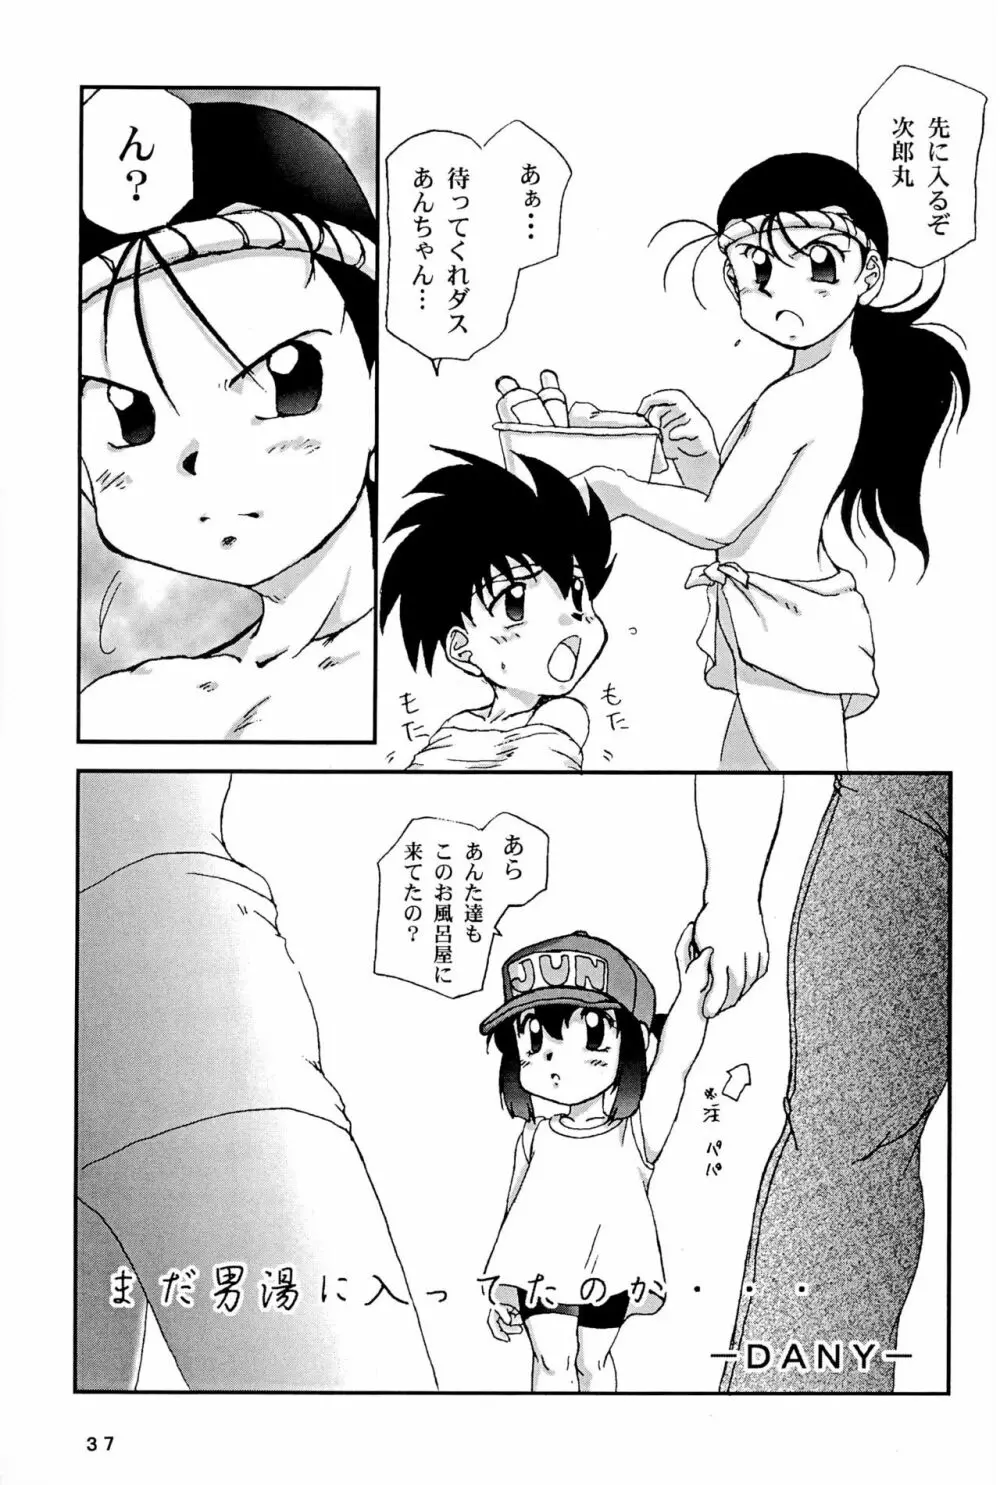 四駆遊戯 巻之弐 - page37